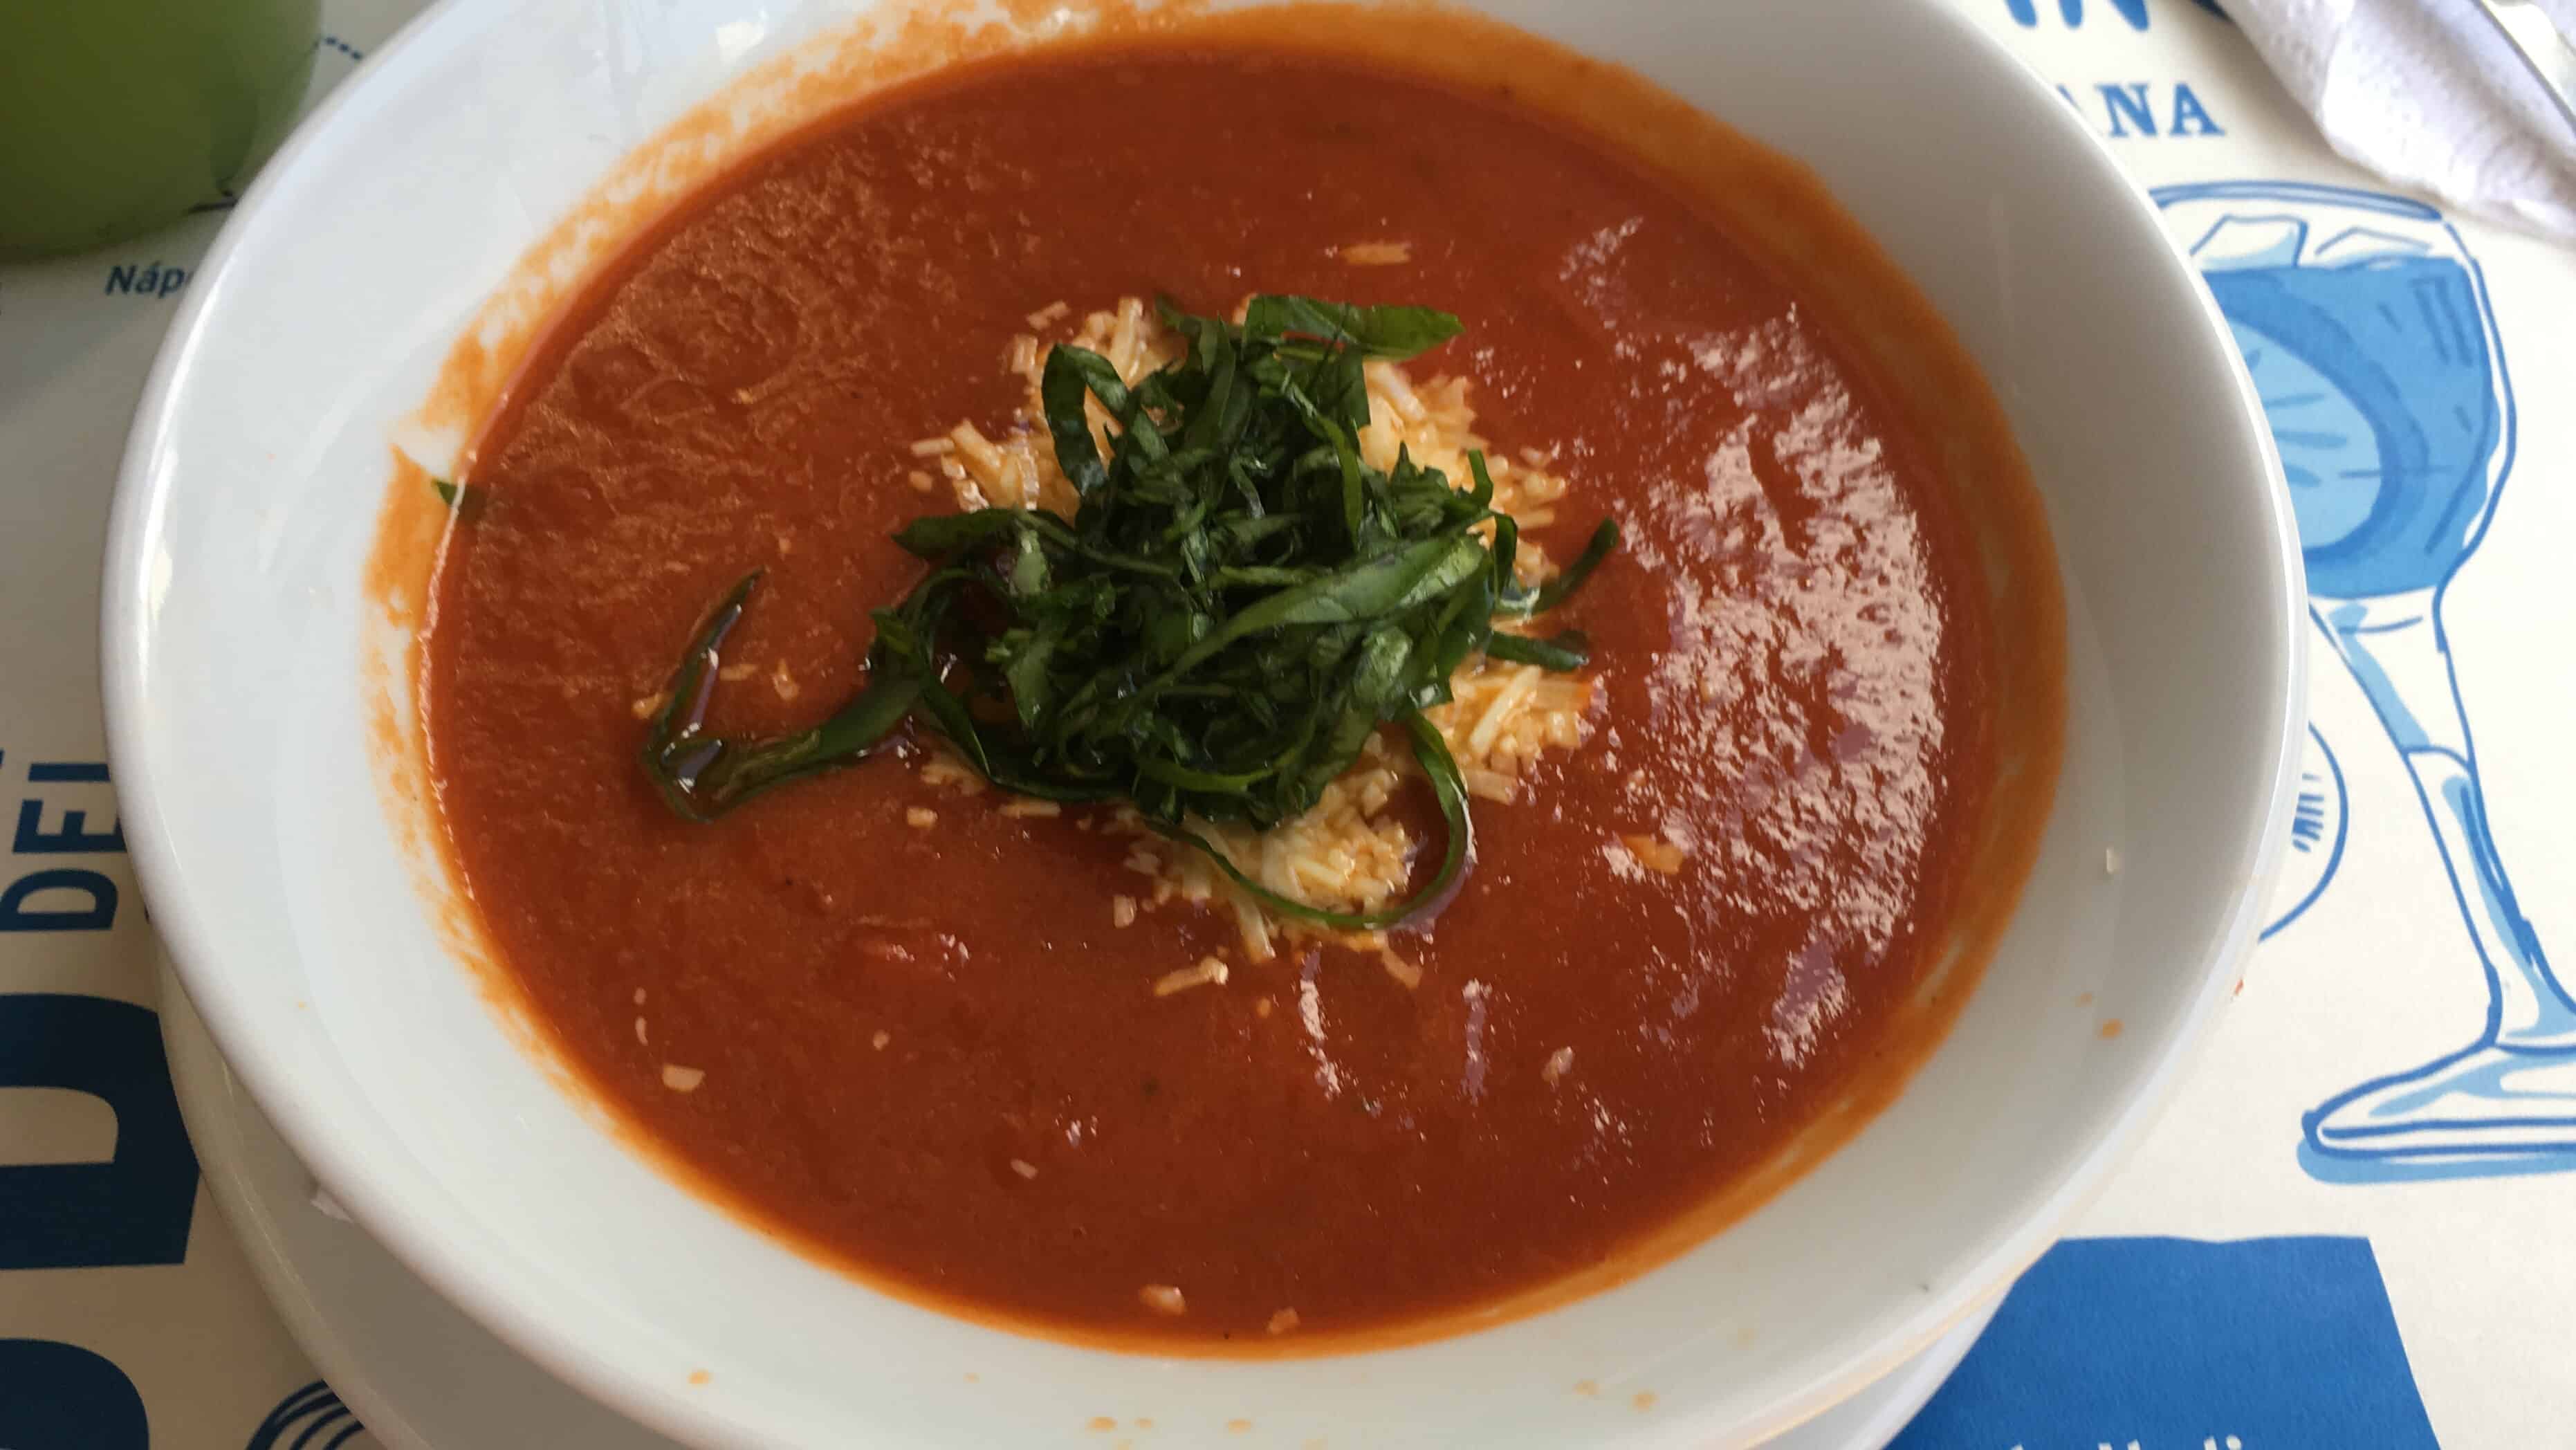 Tomato soup at Nino e Pastino in Medellín, Antioquia, Colombia